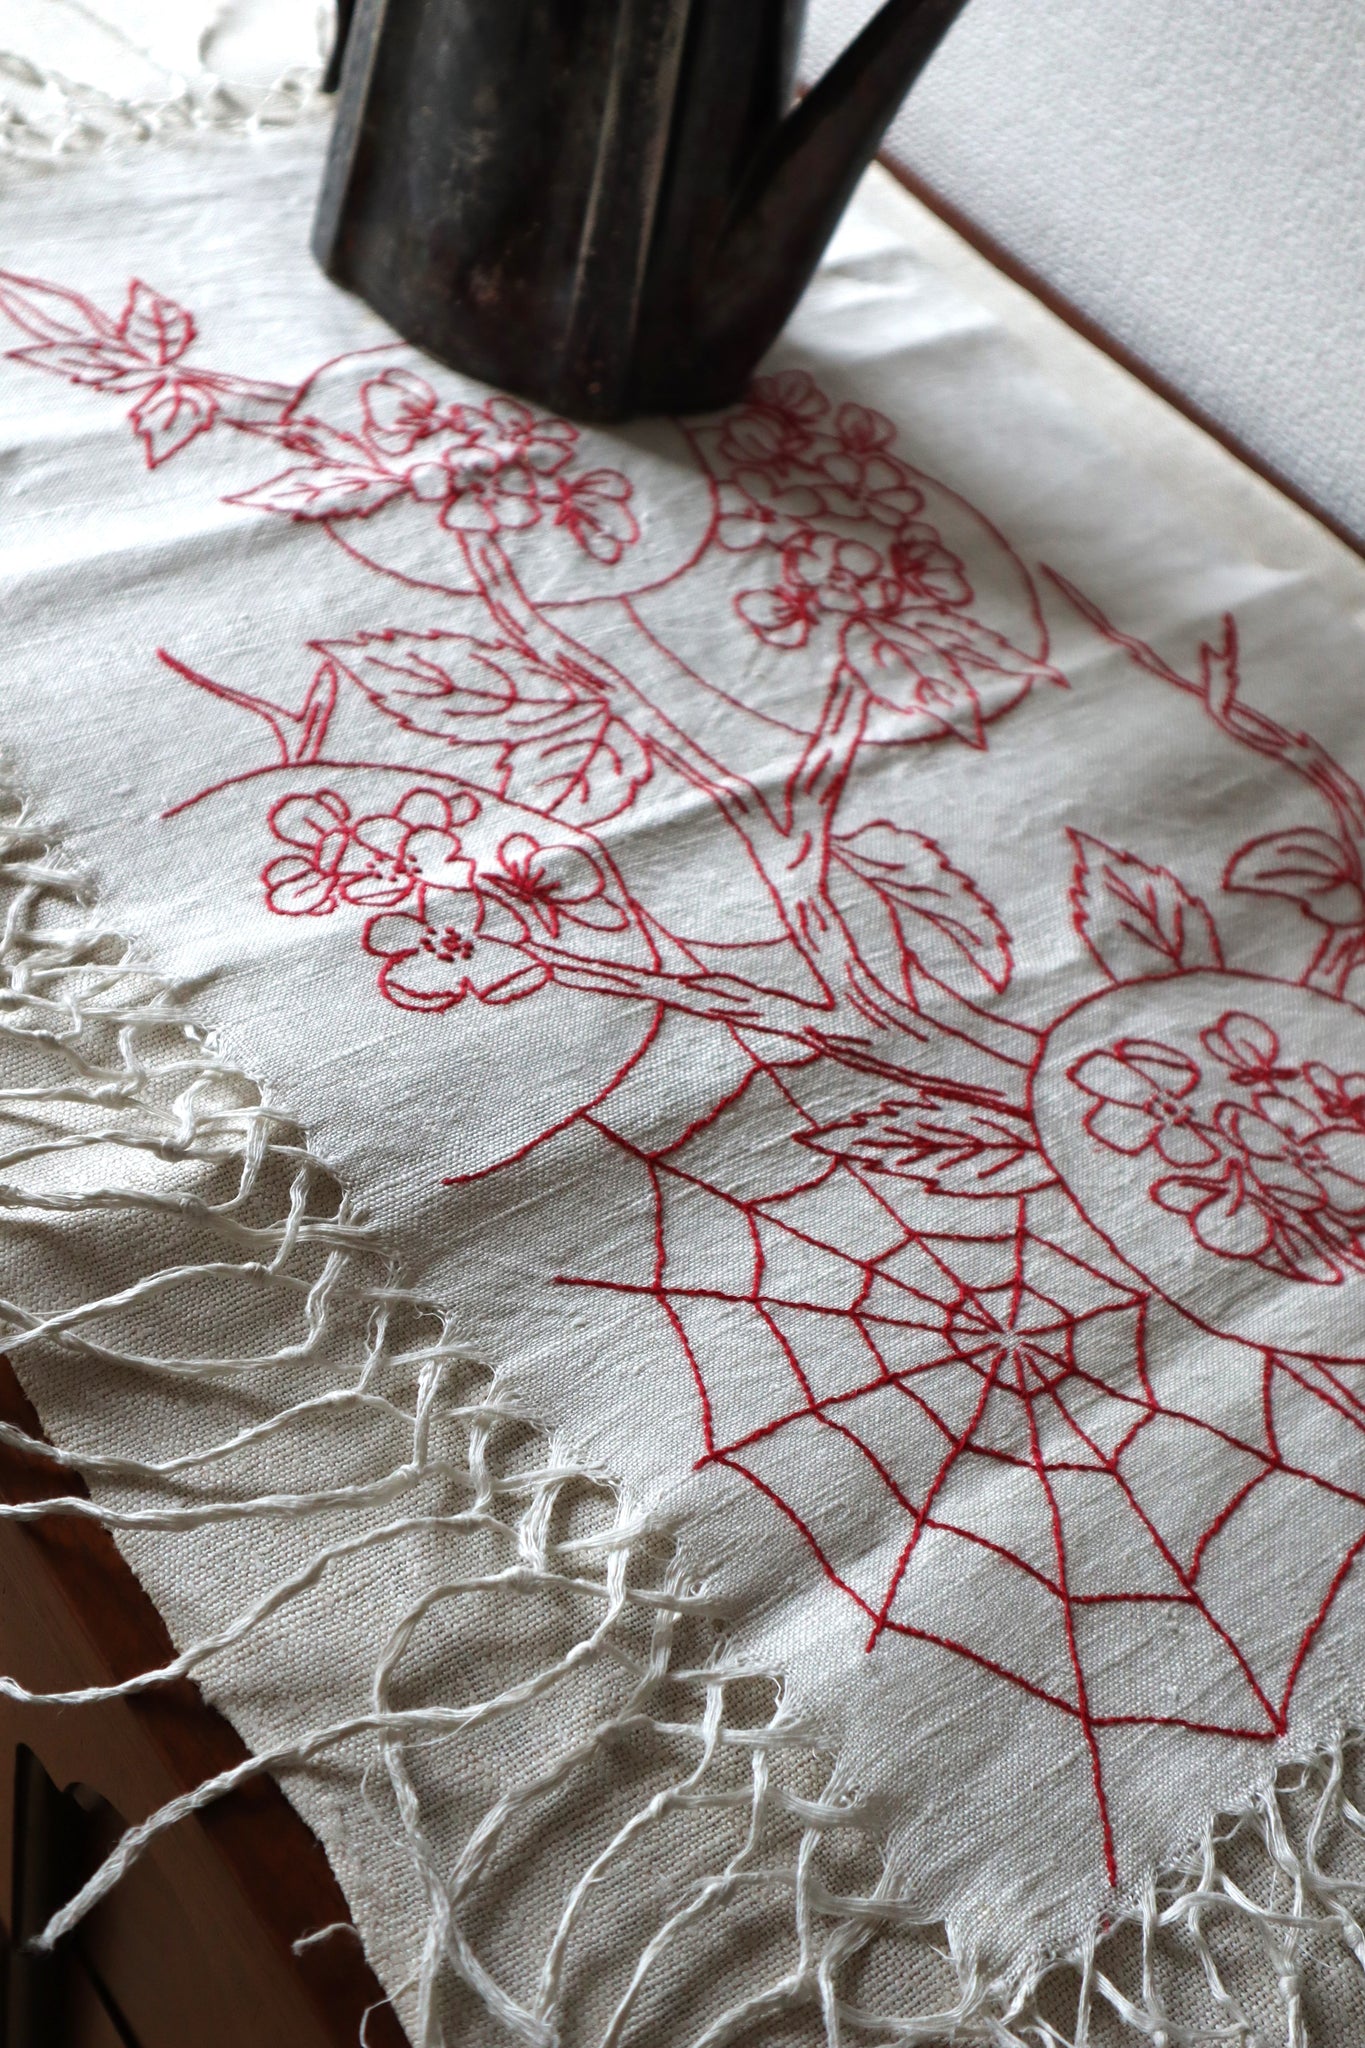 1880s Turkey Red Embroidered Spider Web Splasher